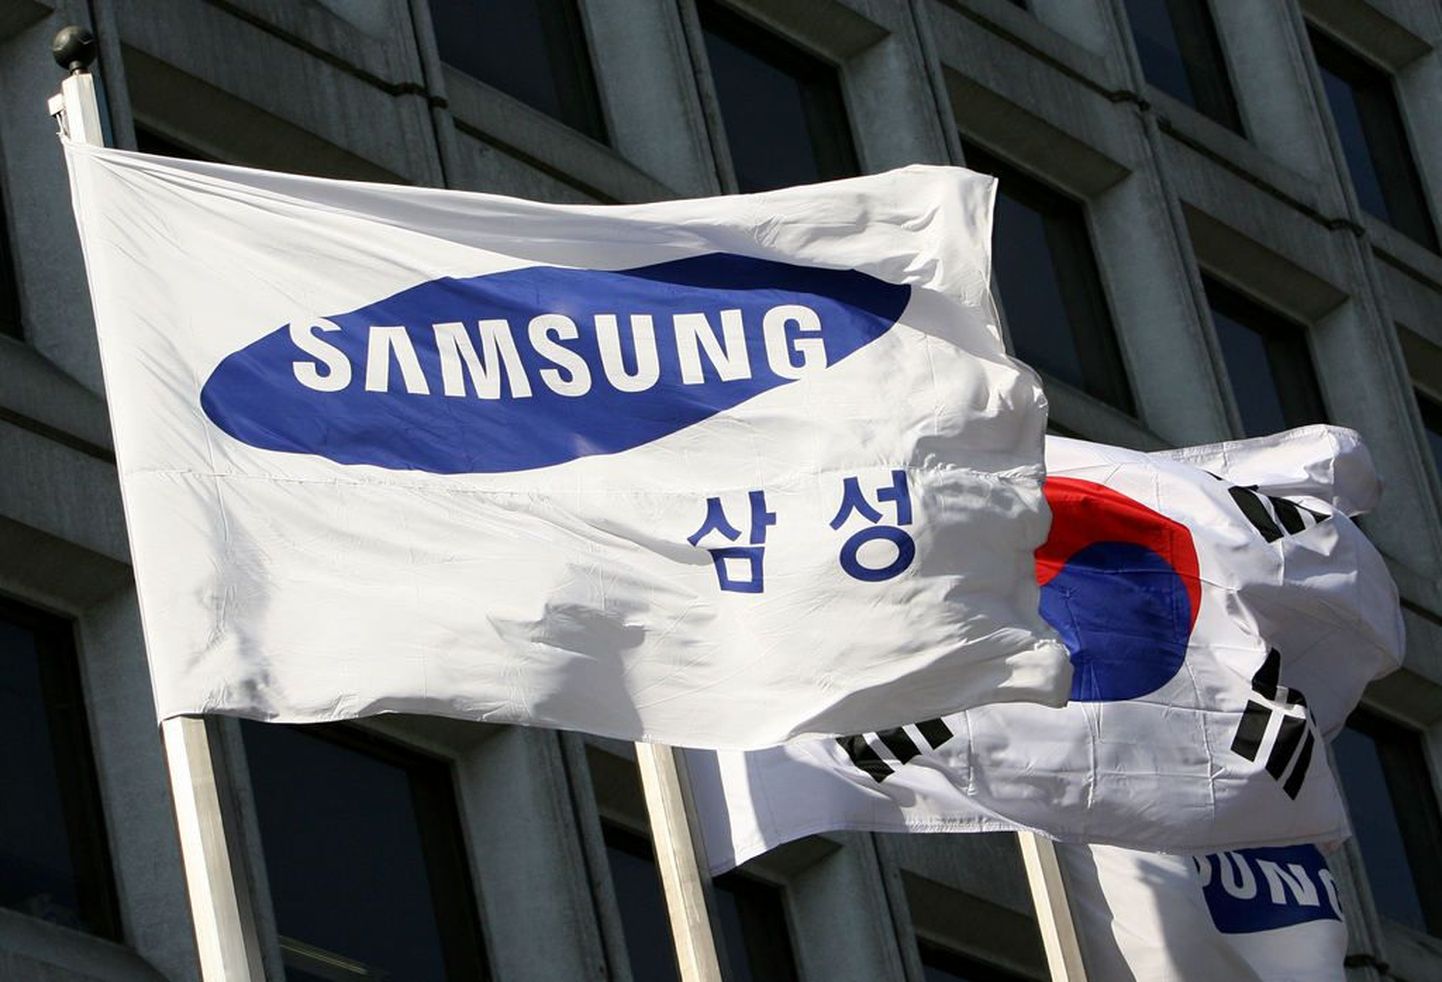 Lõuna-Korea elektroonikagigandi Samsungi lipud Soulis asuva peahoone ees.